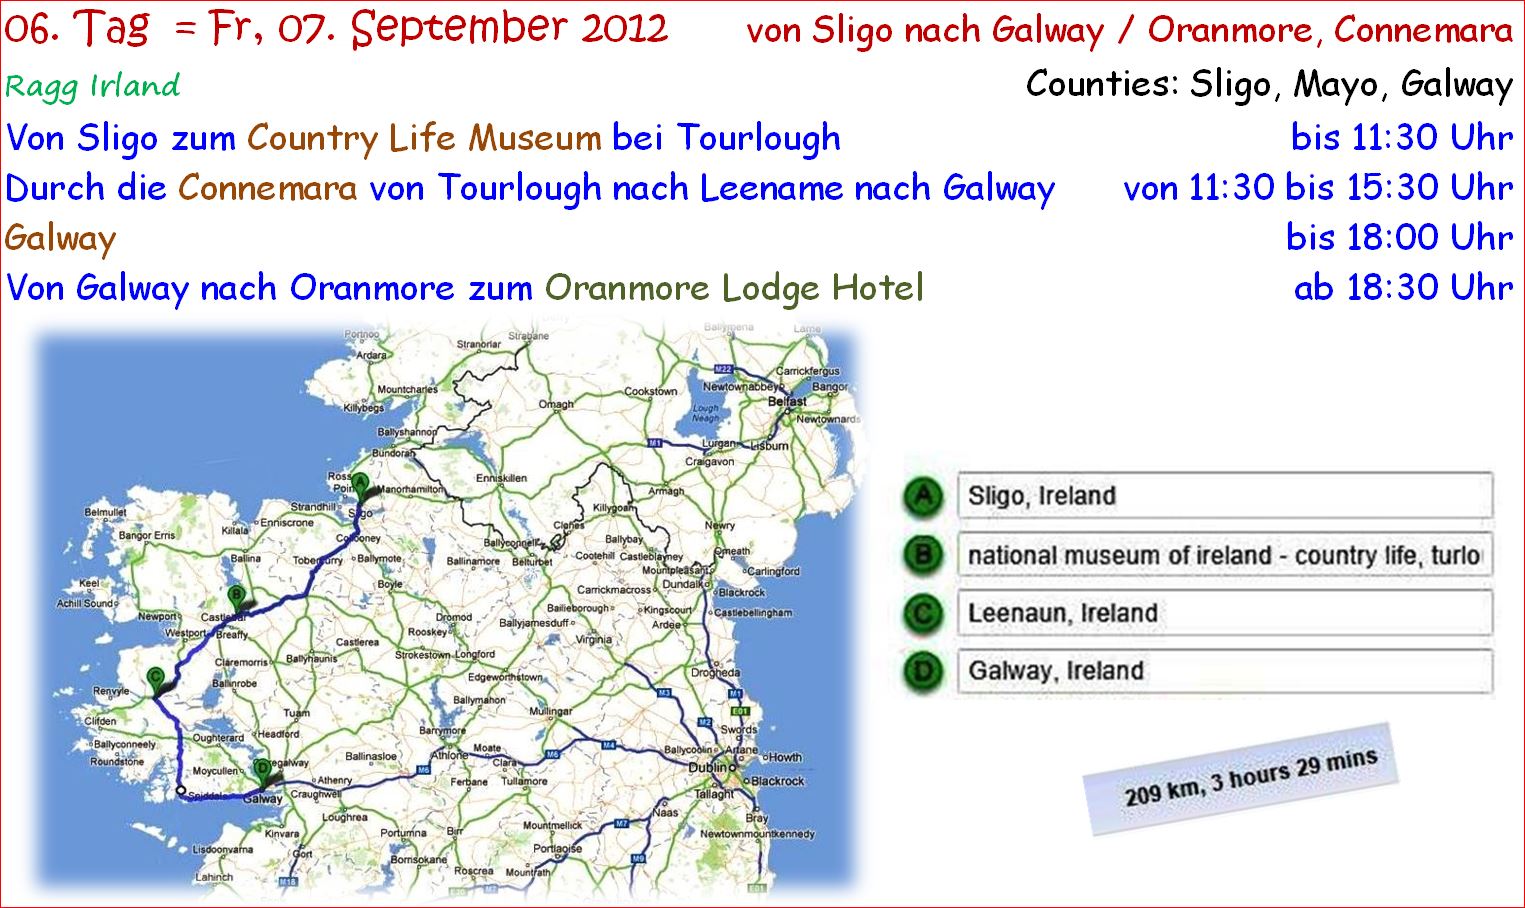 ragg 2012-09-07 - 1110Aweb - Irland - Sligo nach Galway - Tag 06 - S08 B01